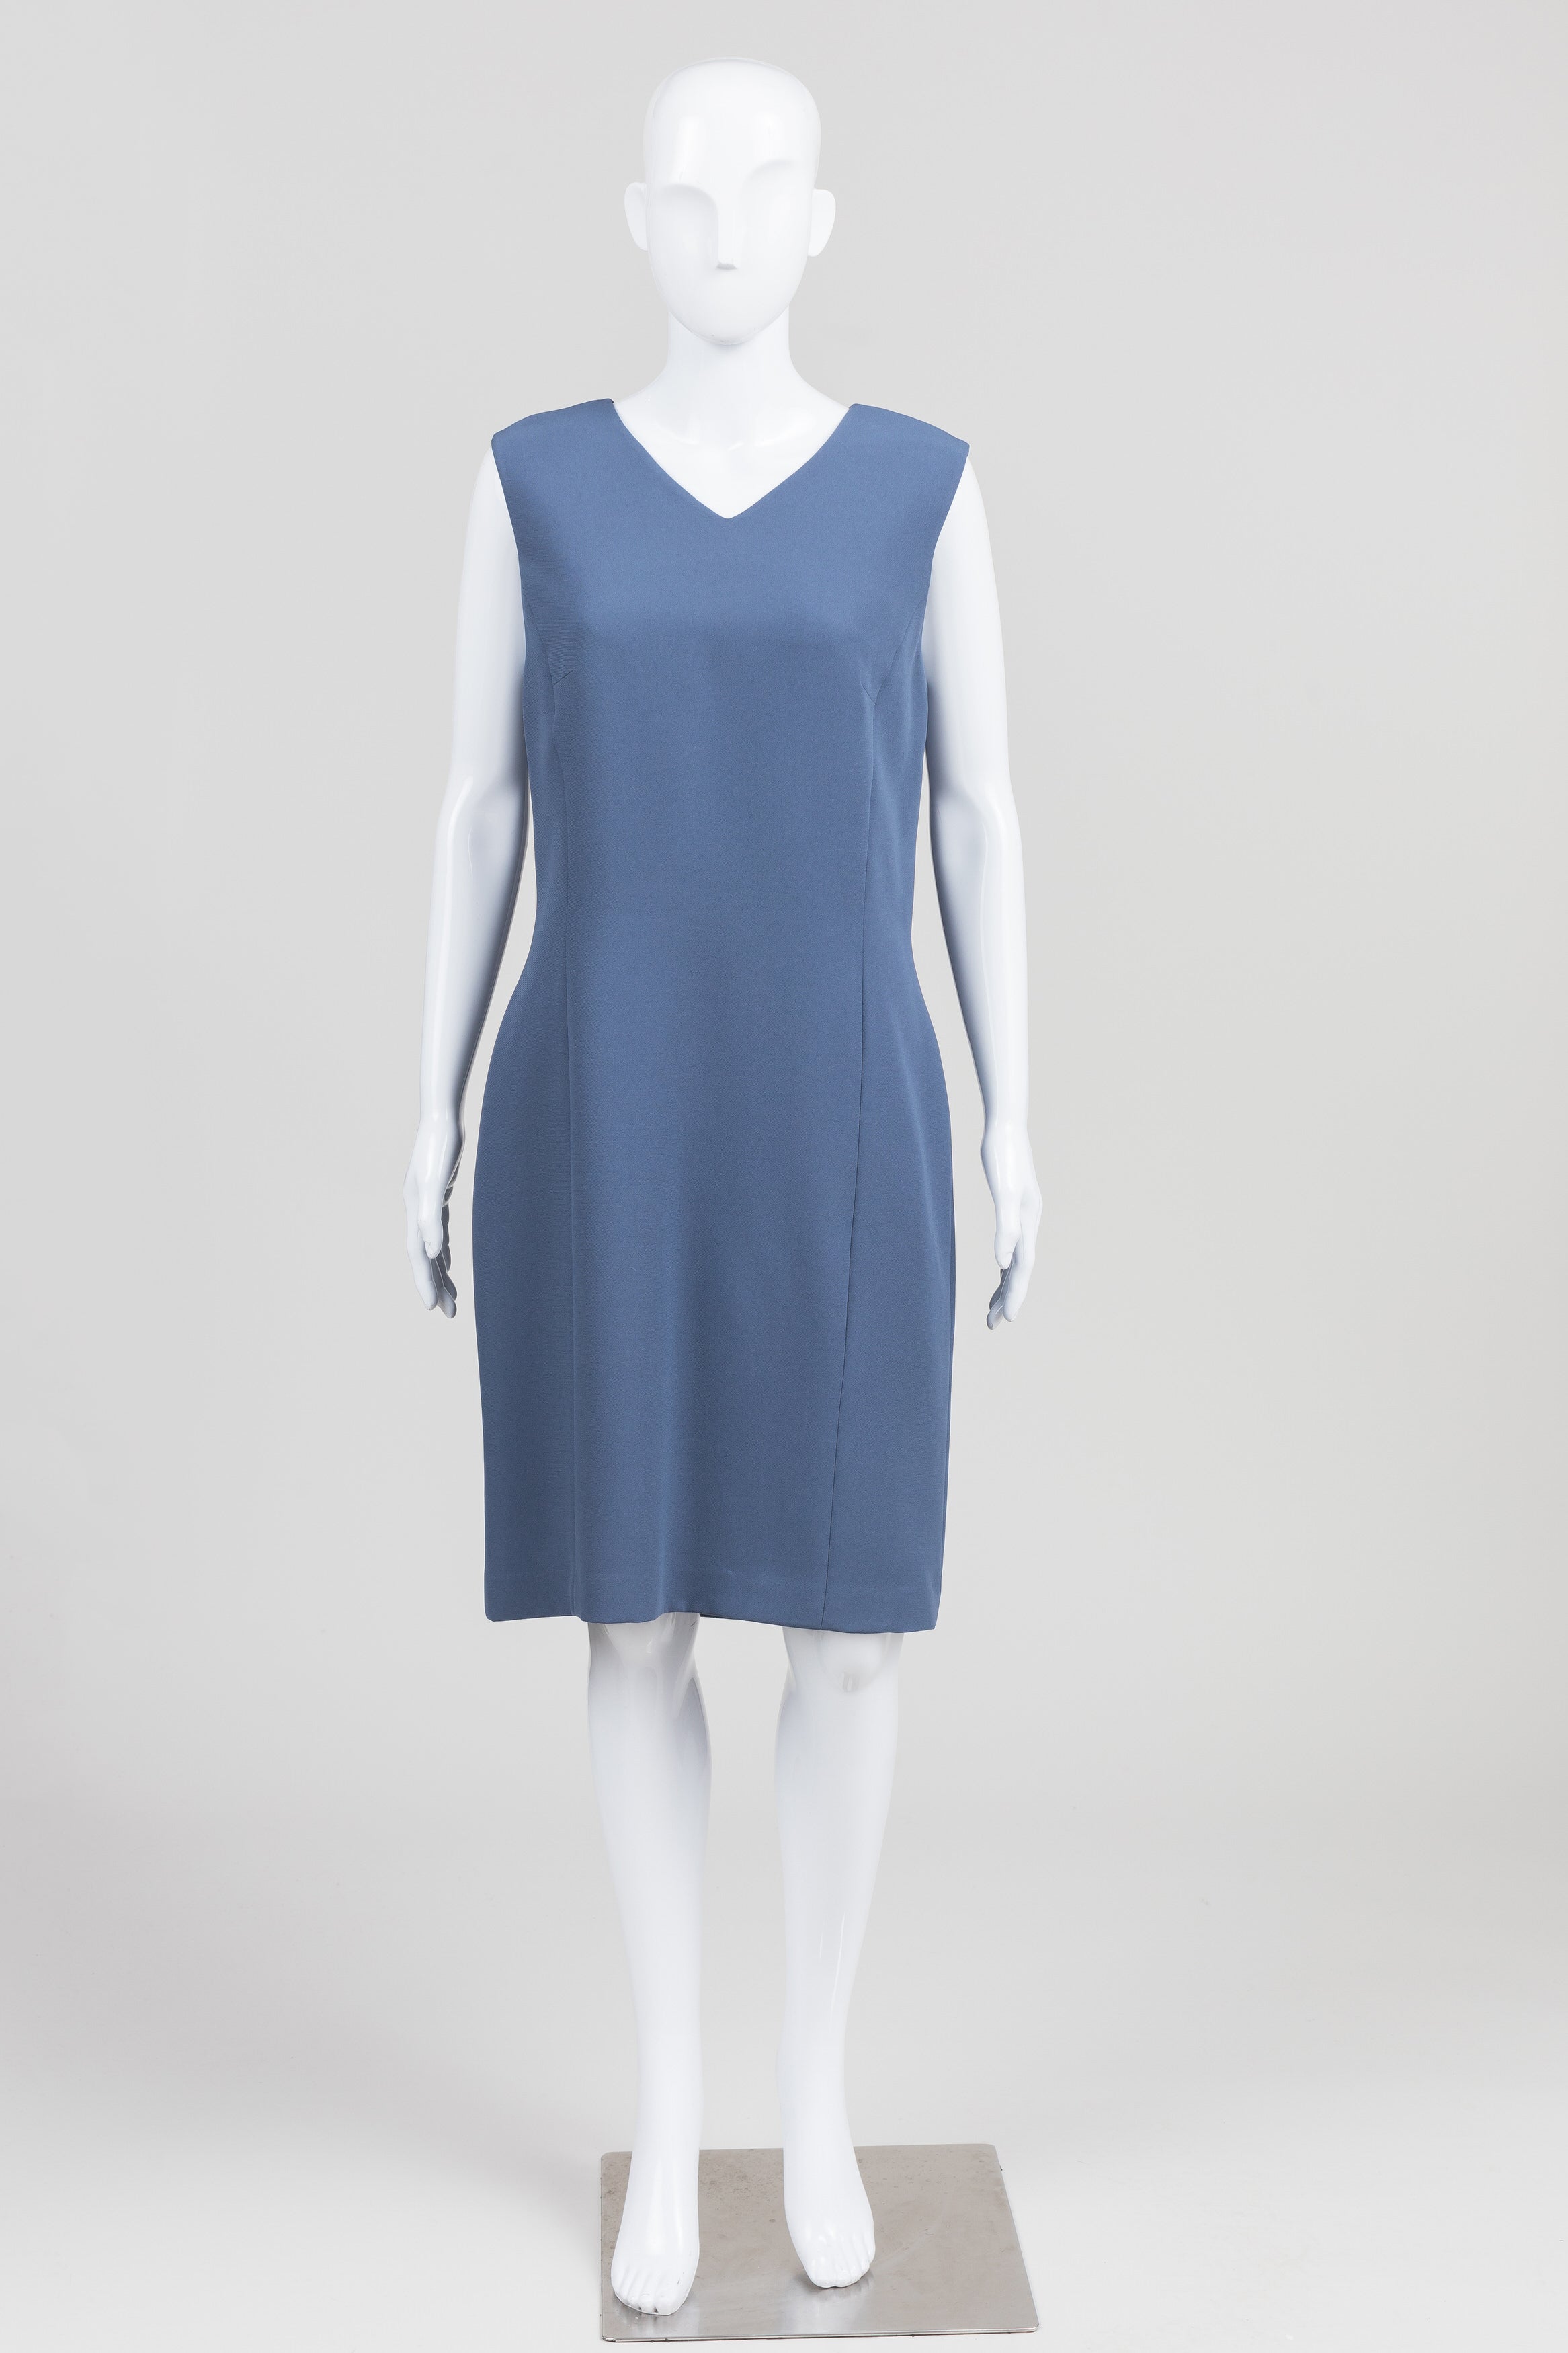 B. Bennett Slate Blue Dress & Coat Set (12)